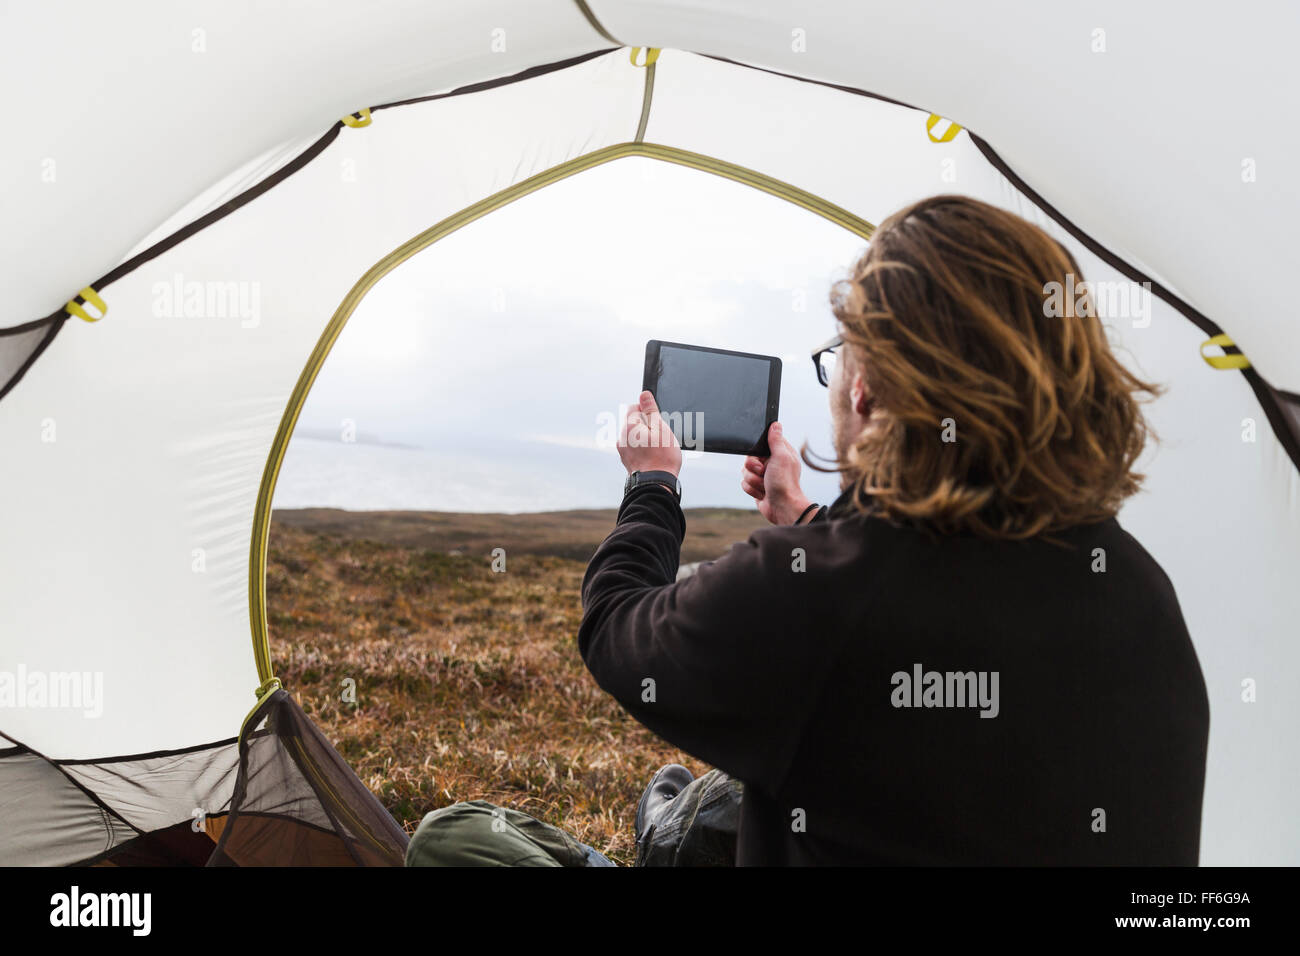 Un uomo seduto al riparo di una tenda guardando fuori, scattare una fotografia con una tavoletta digitale Foto Stock